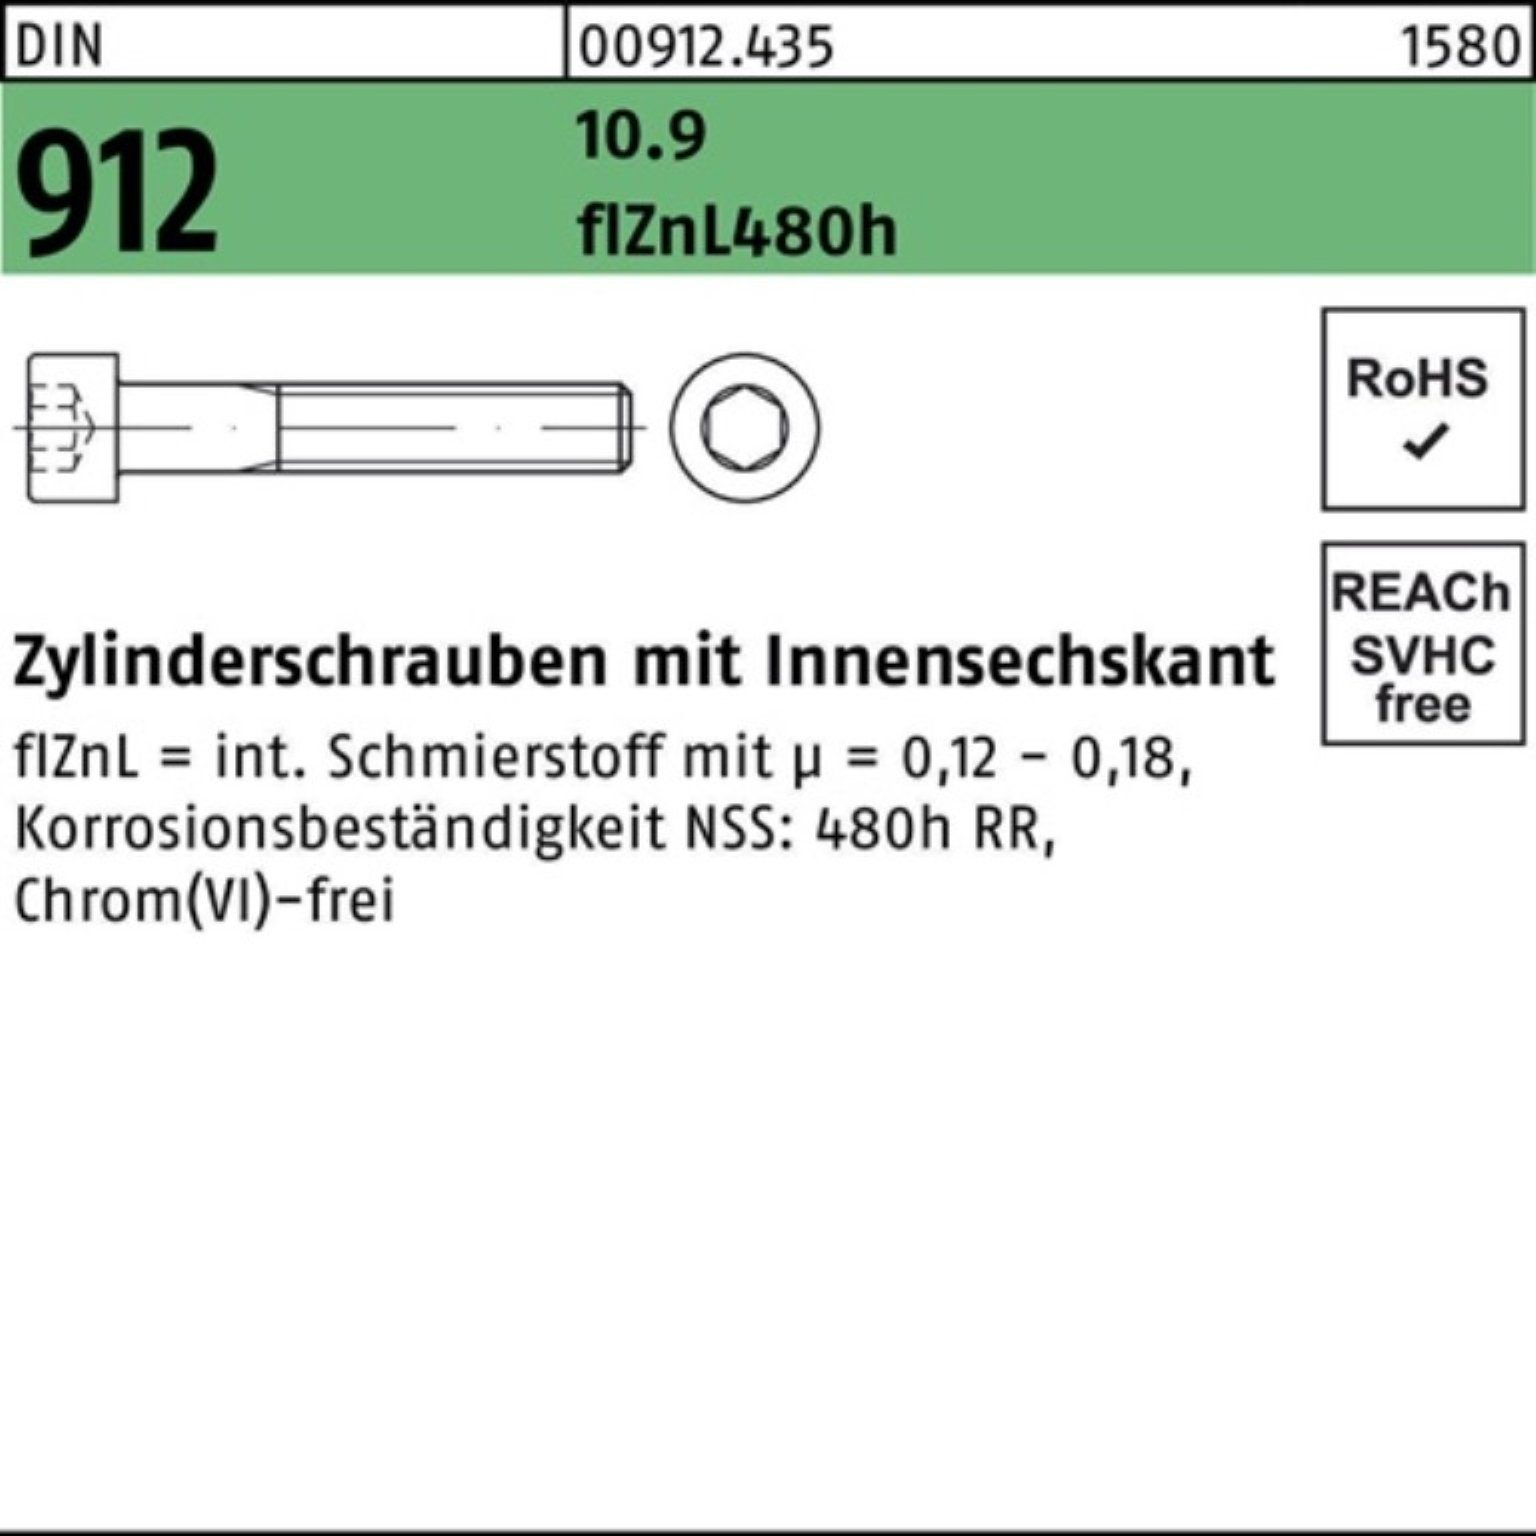 Reyher Zylinderschraube 100er Pack DIN Zylinderschraube M24x130 10.9 flZnL/nc/x Innen-6kt 912